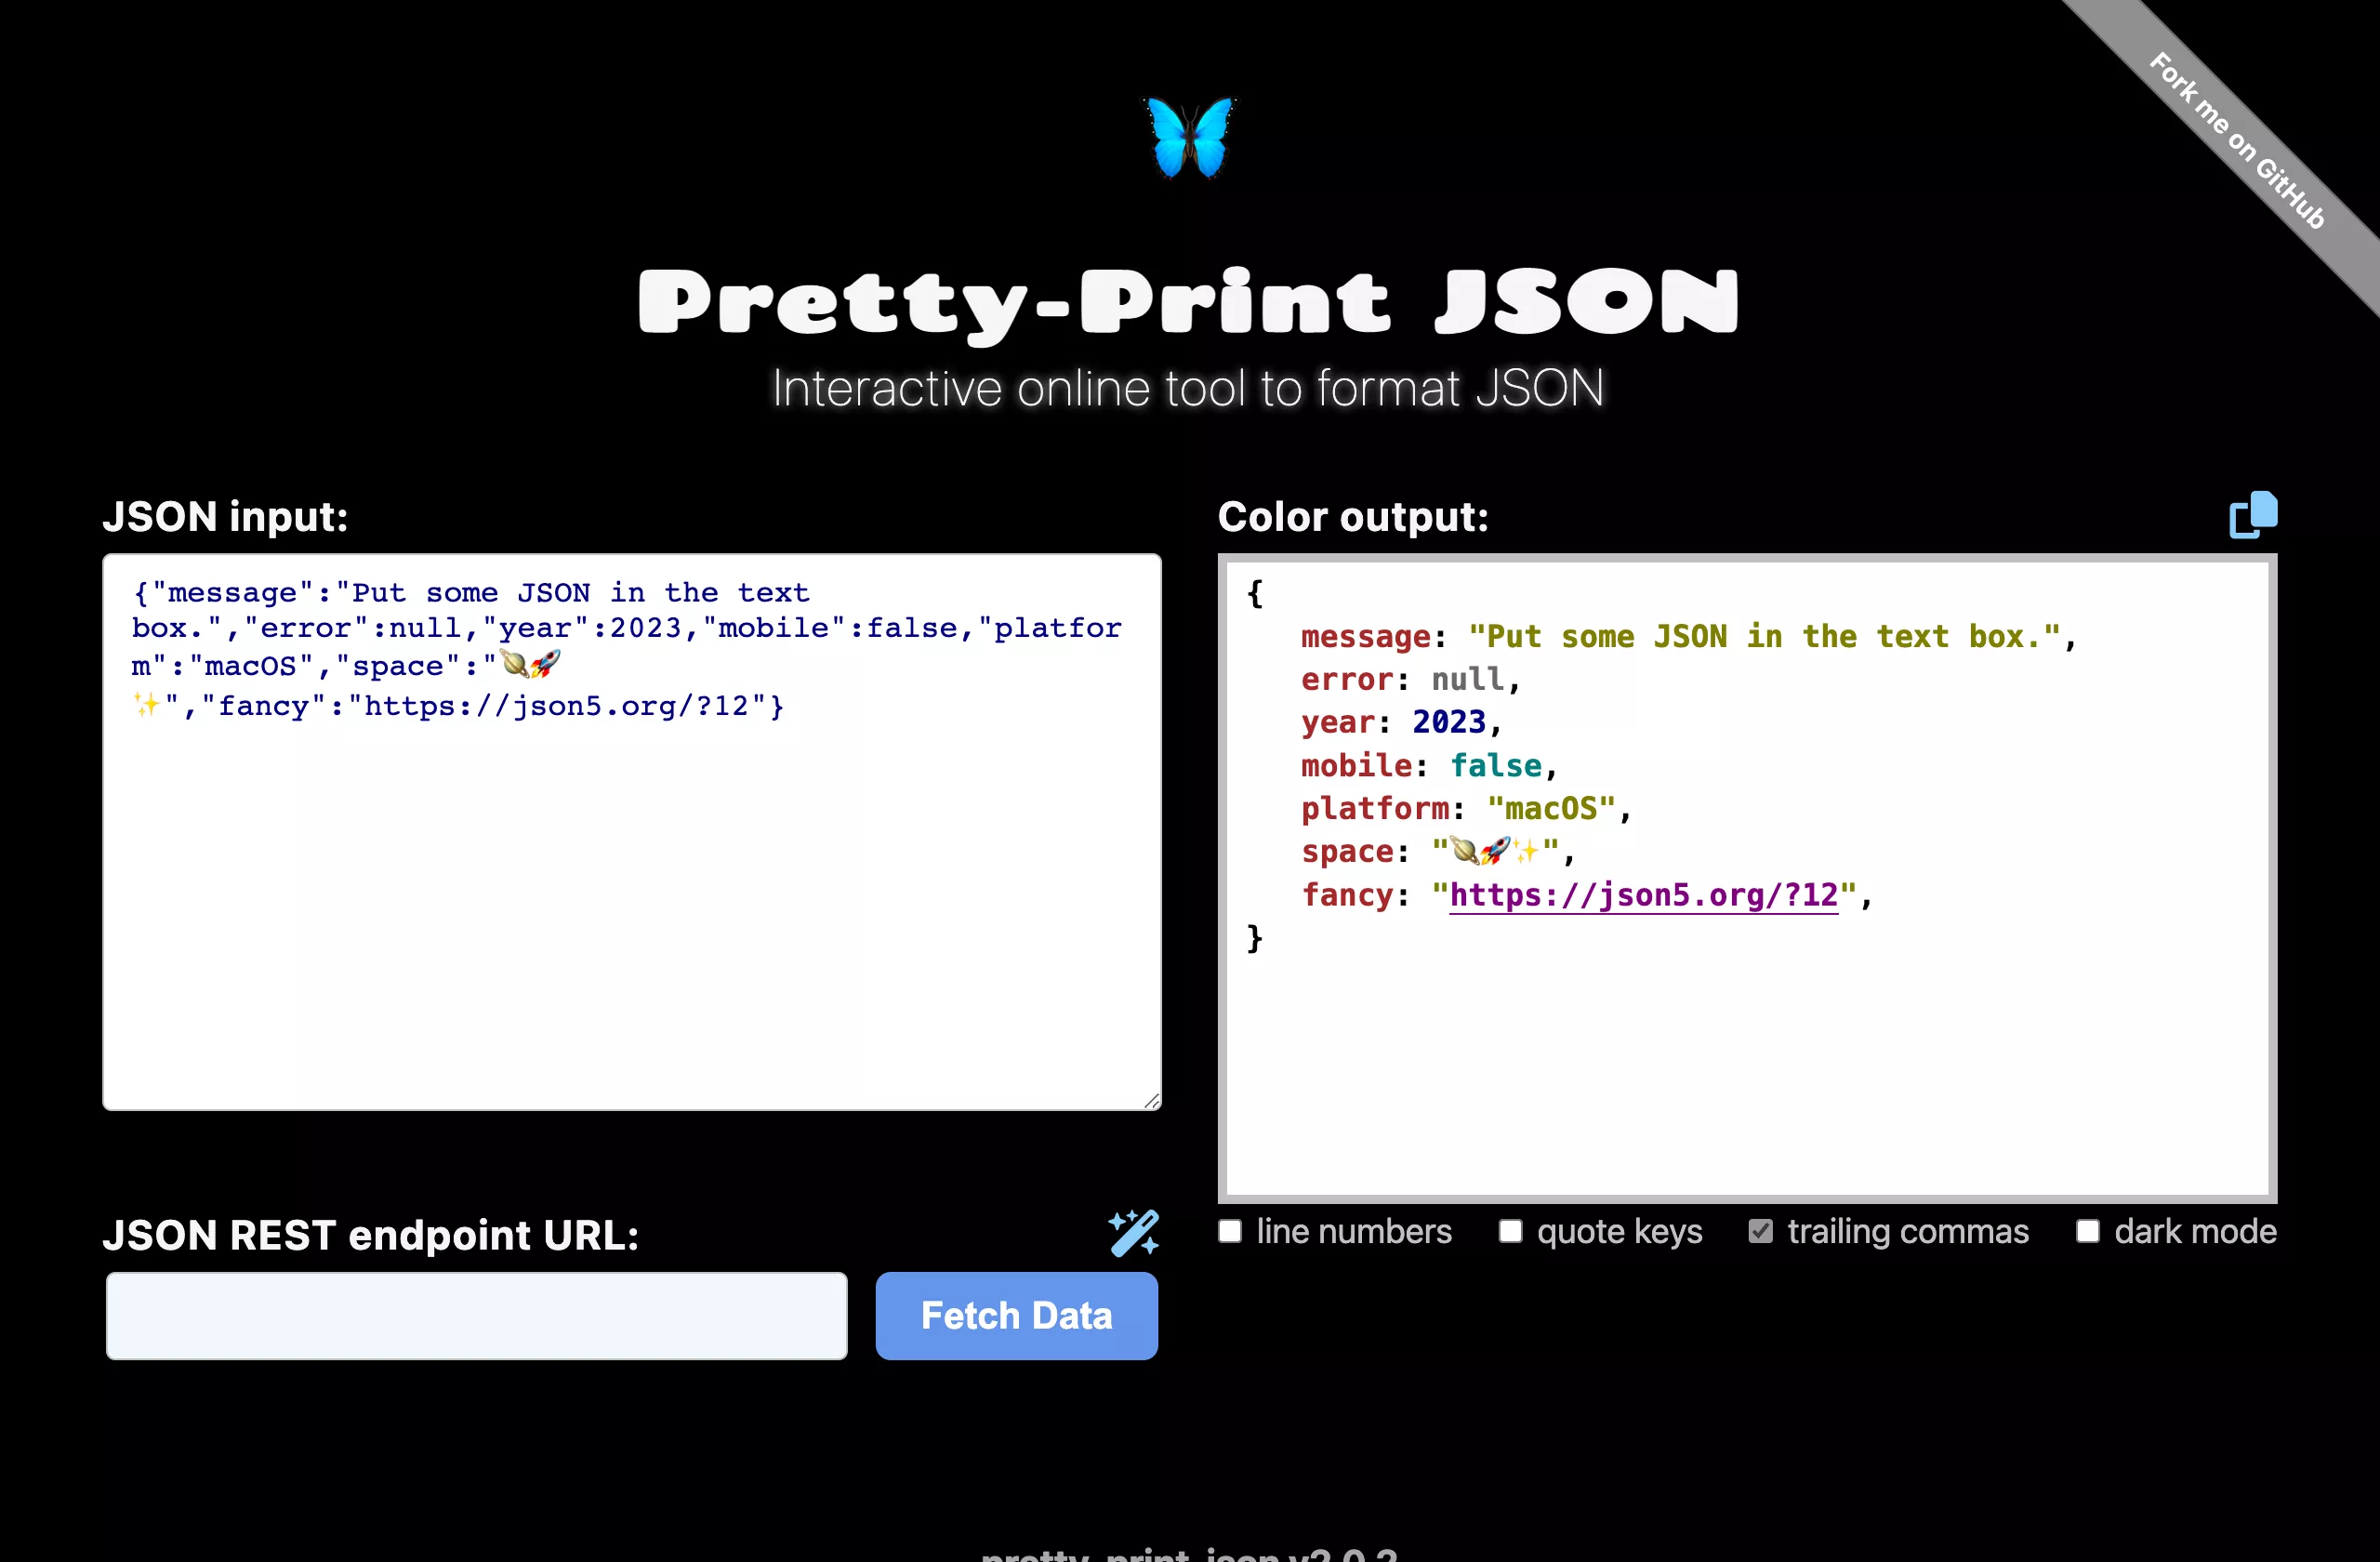 Pretty-Print JSON